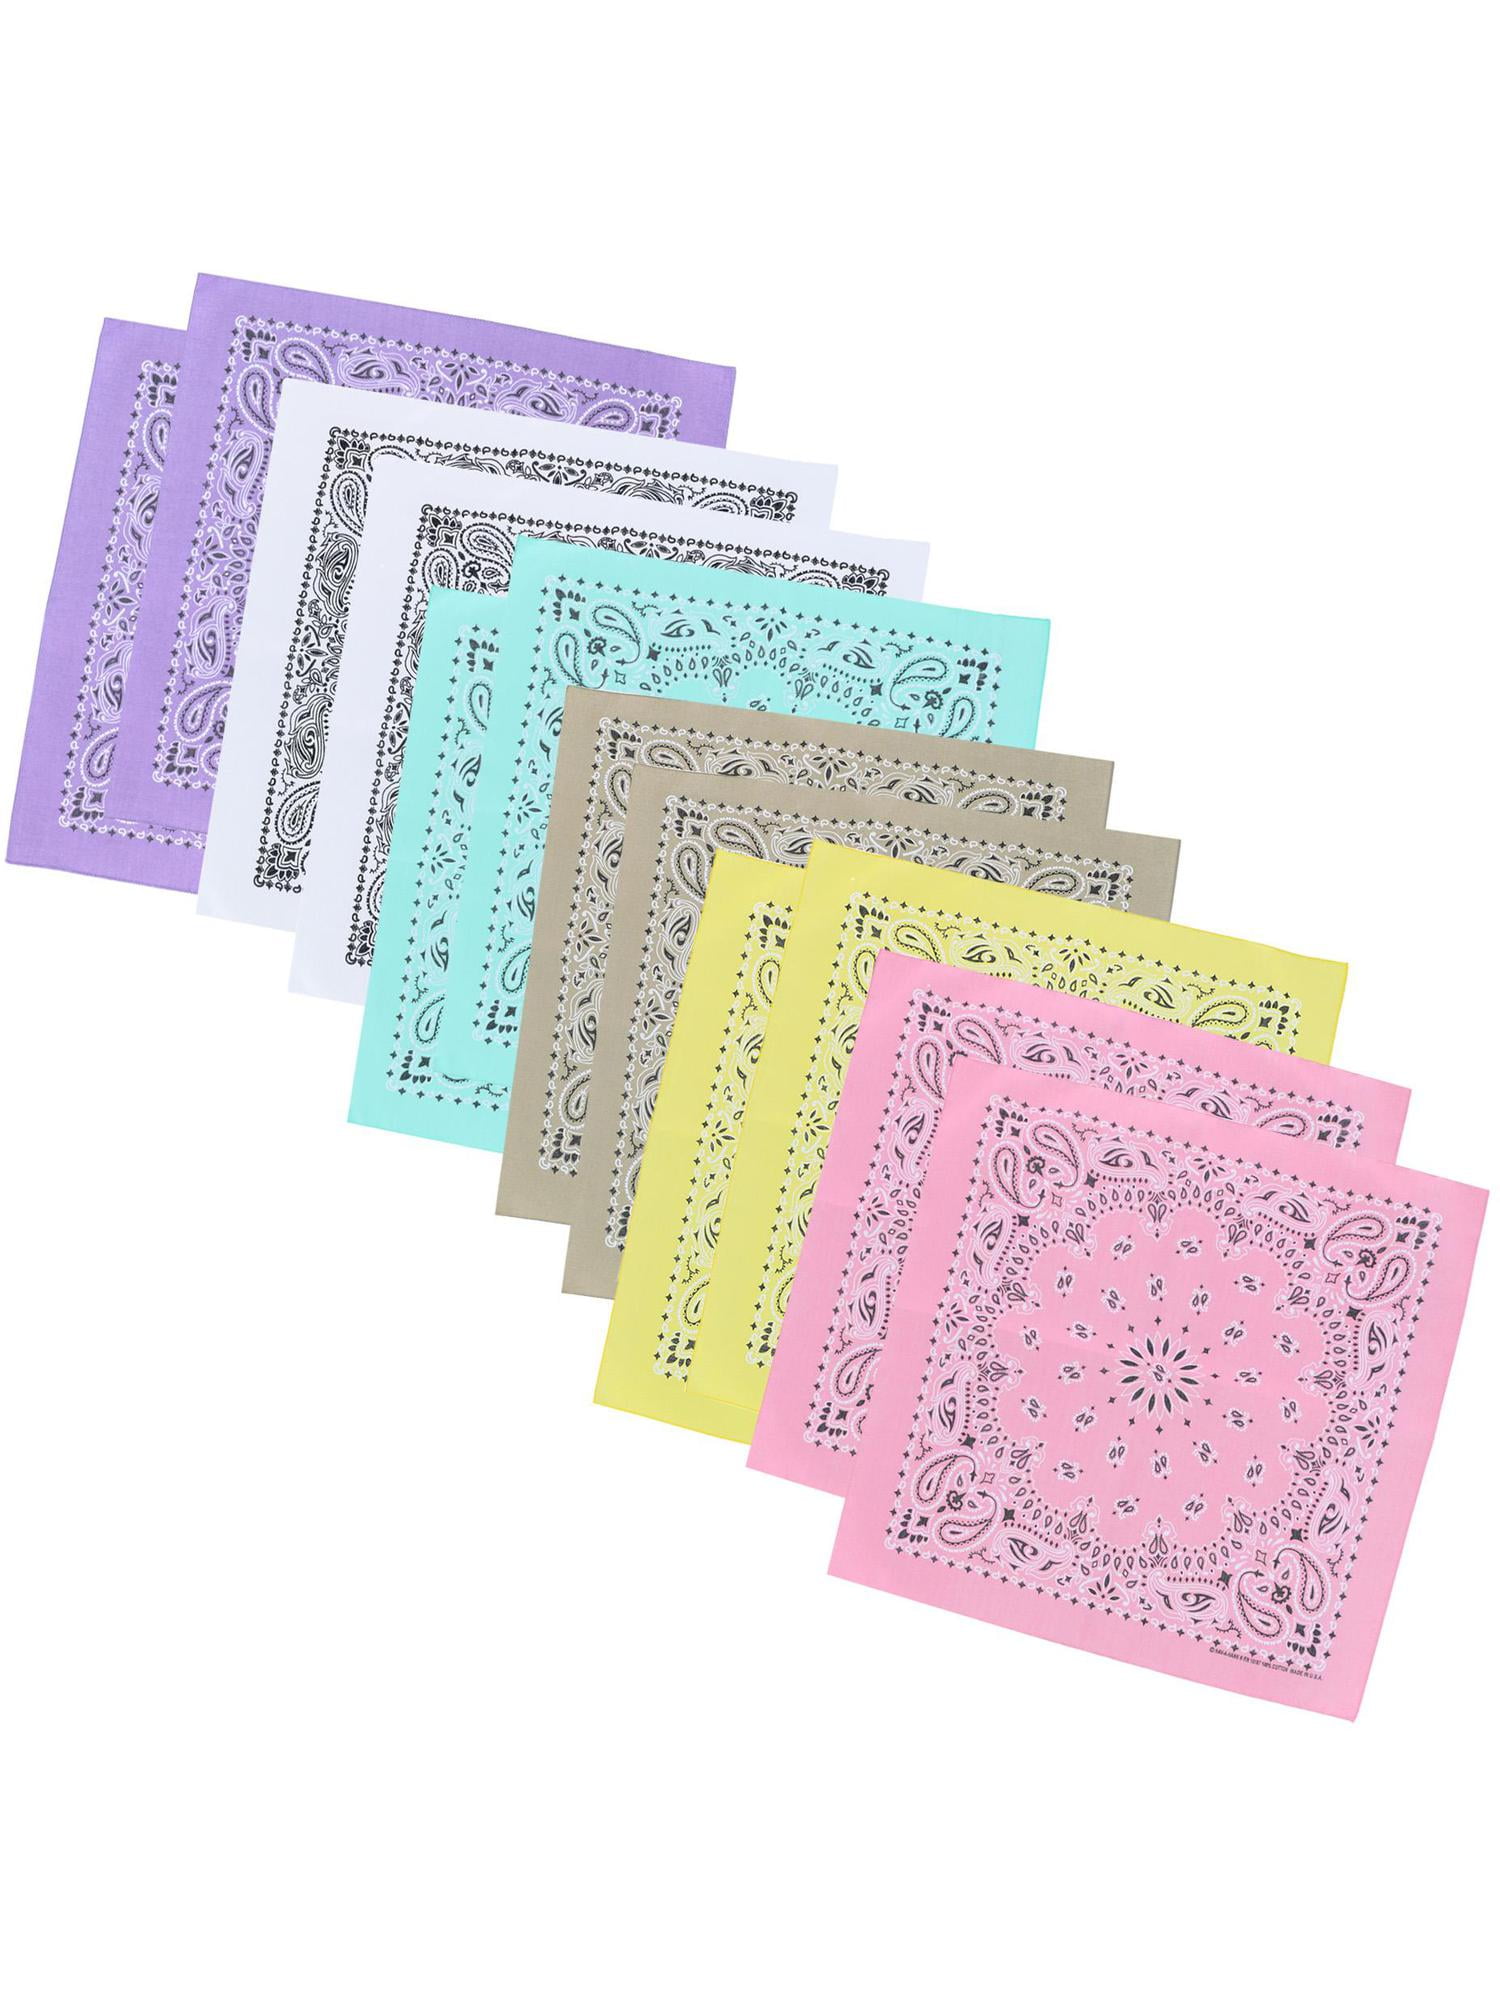 Paisley Print Stylish Design Bandana Scarves Rainbow Colours Value Pack 12 Set 